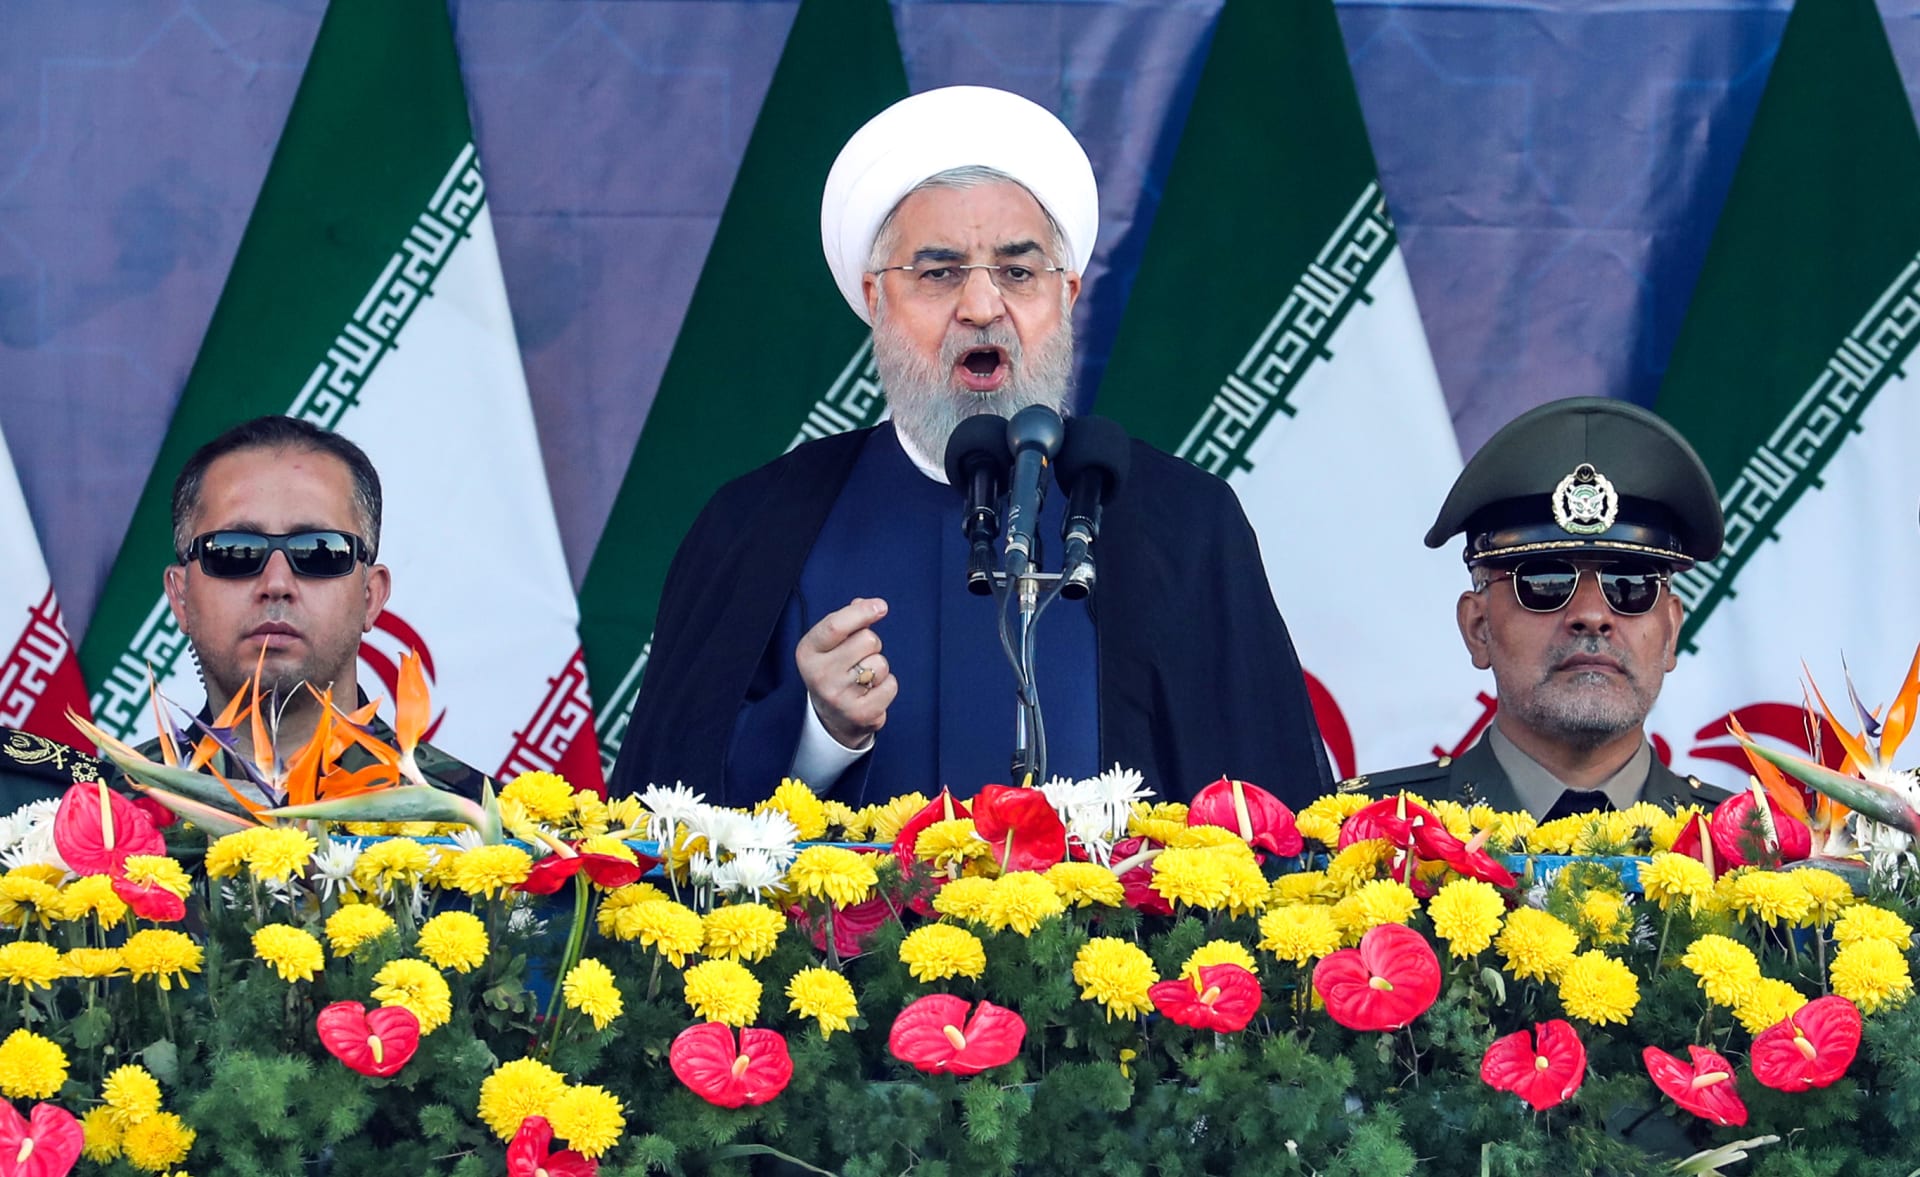 ما هو الأمر الذي أصدره روحاني بعد الهجوم الذي استهدف عرضاً عسكرياً في إيران؟